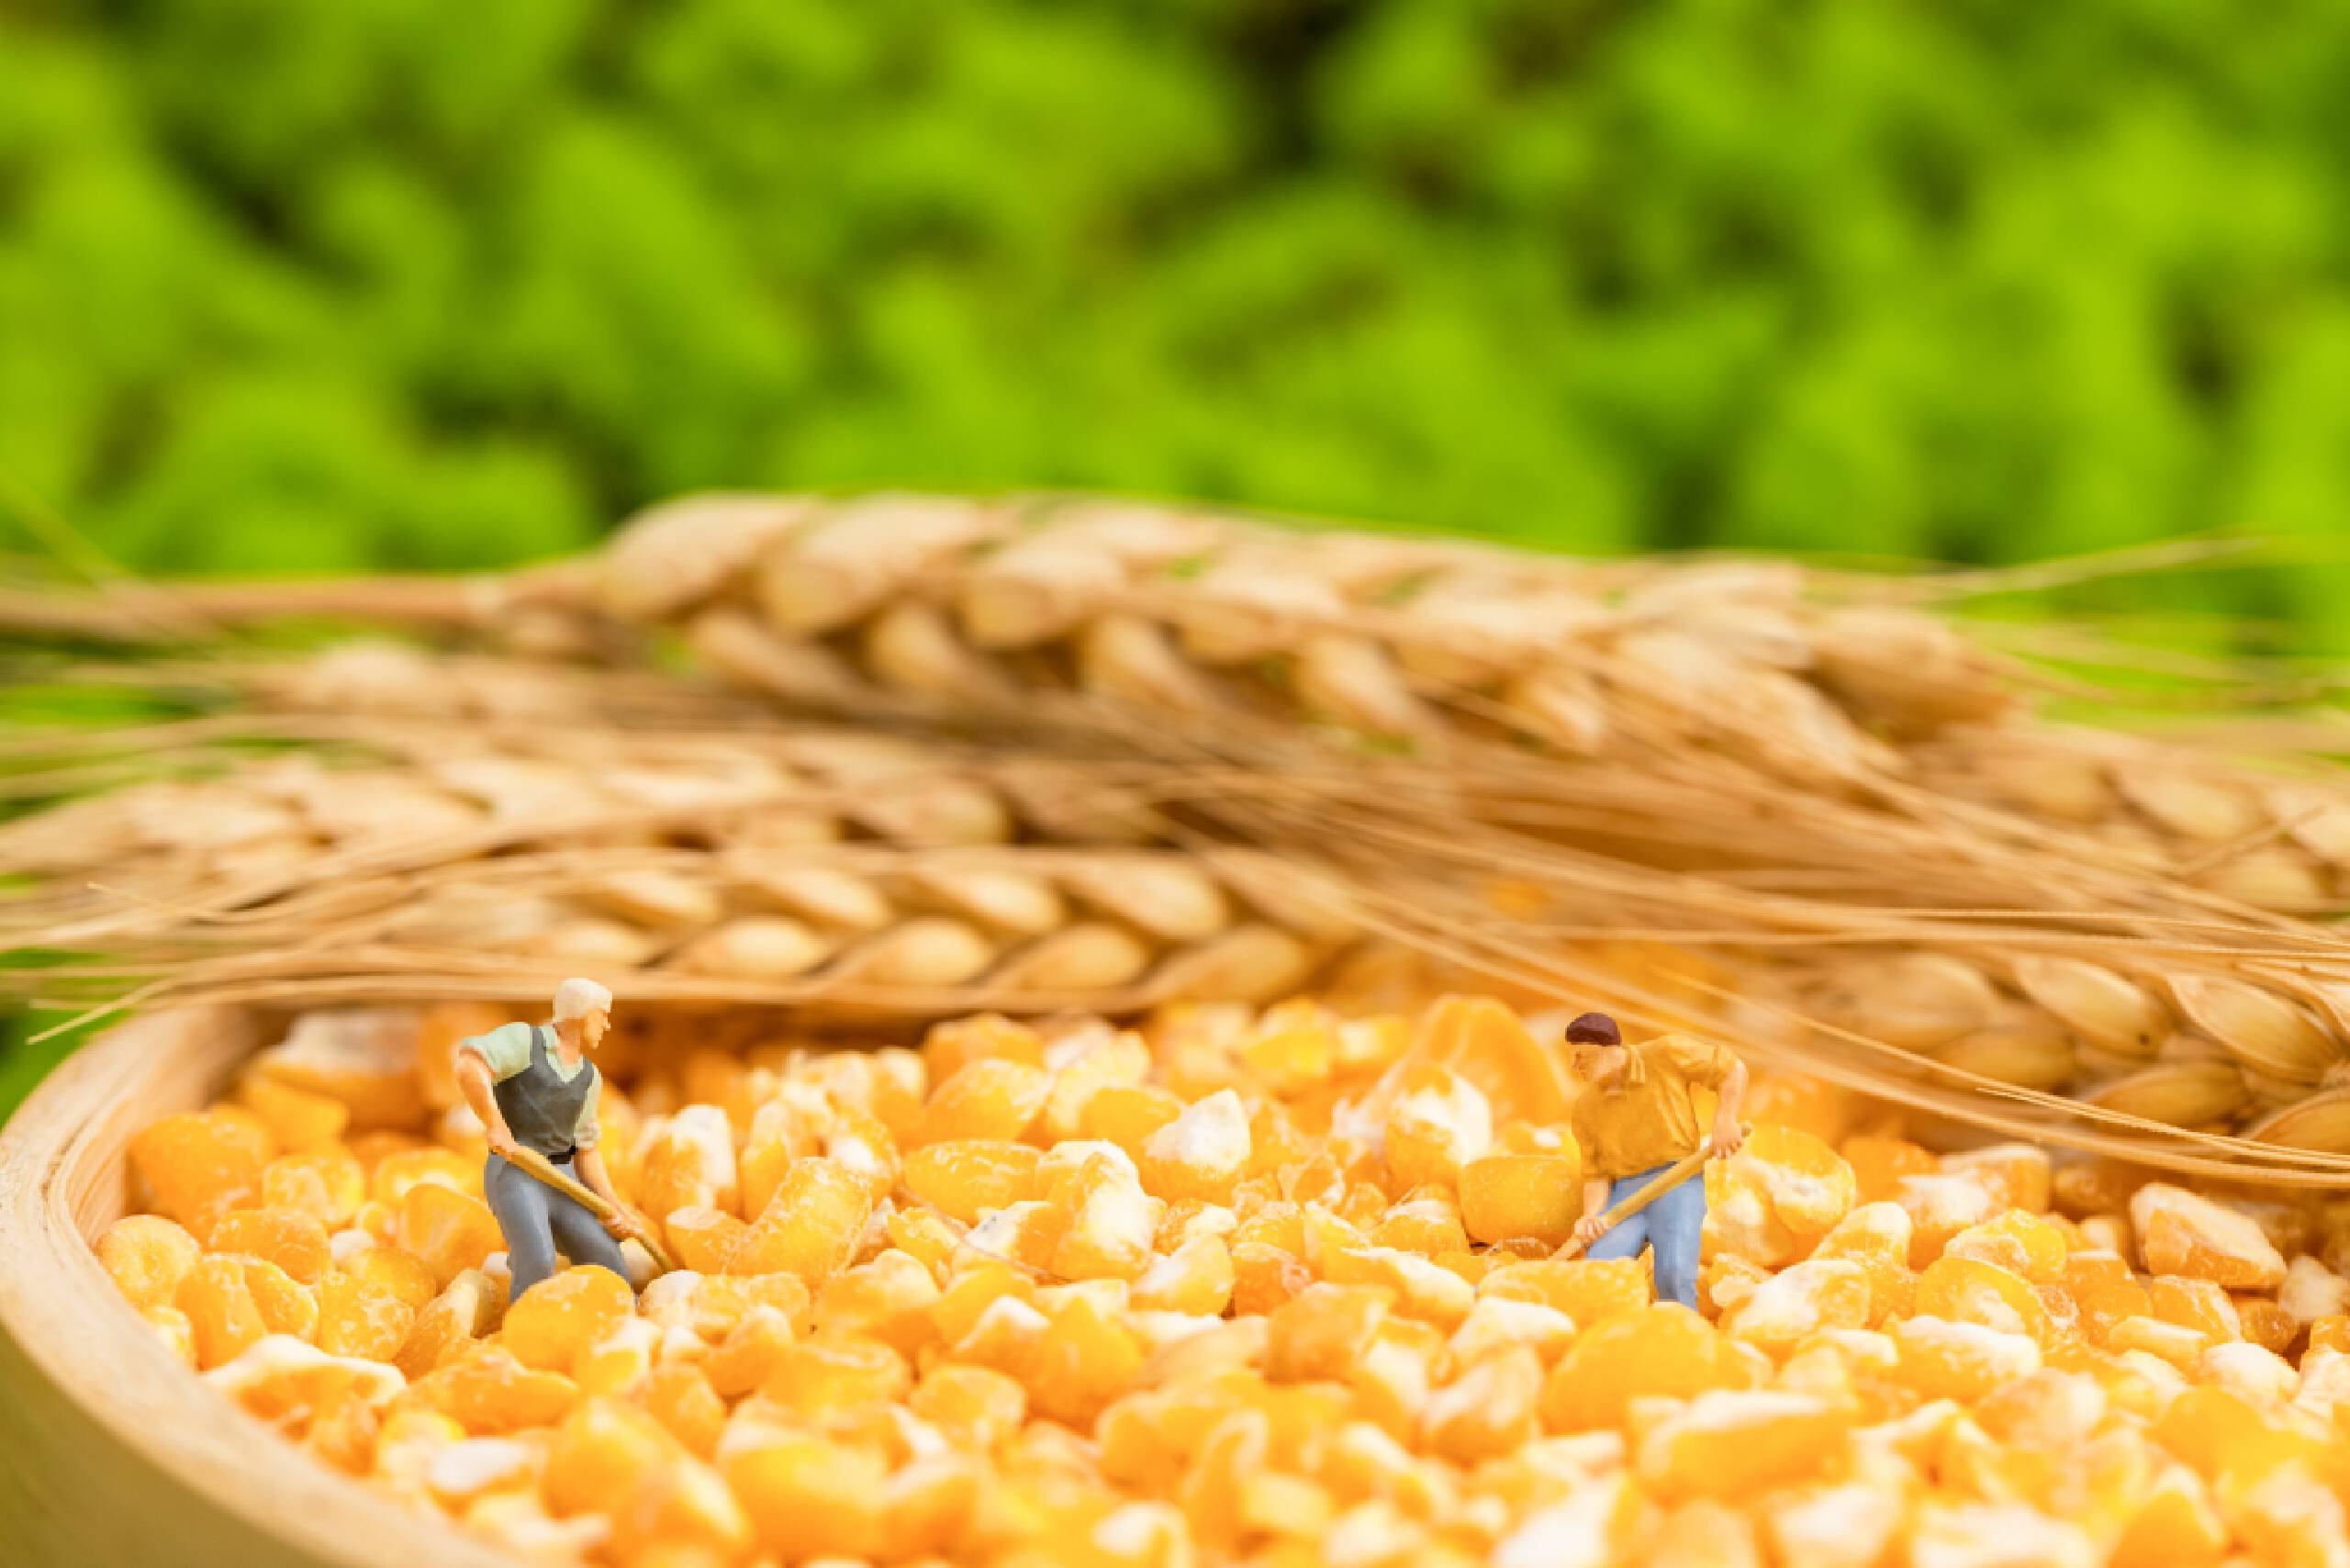 后期玉米价格的涨幅，仍然得看小麦价格的“脸色”？你怎么看？